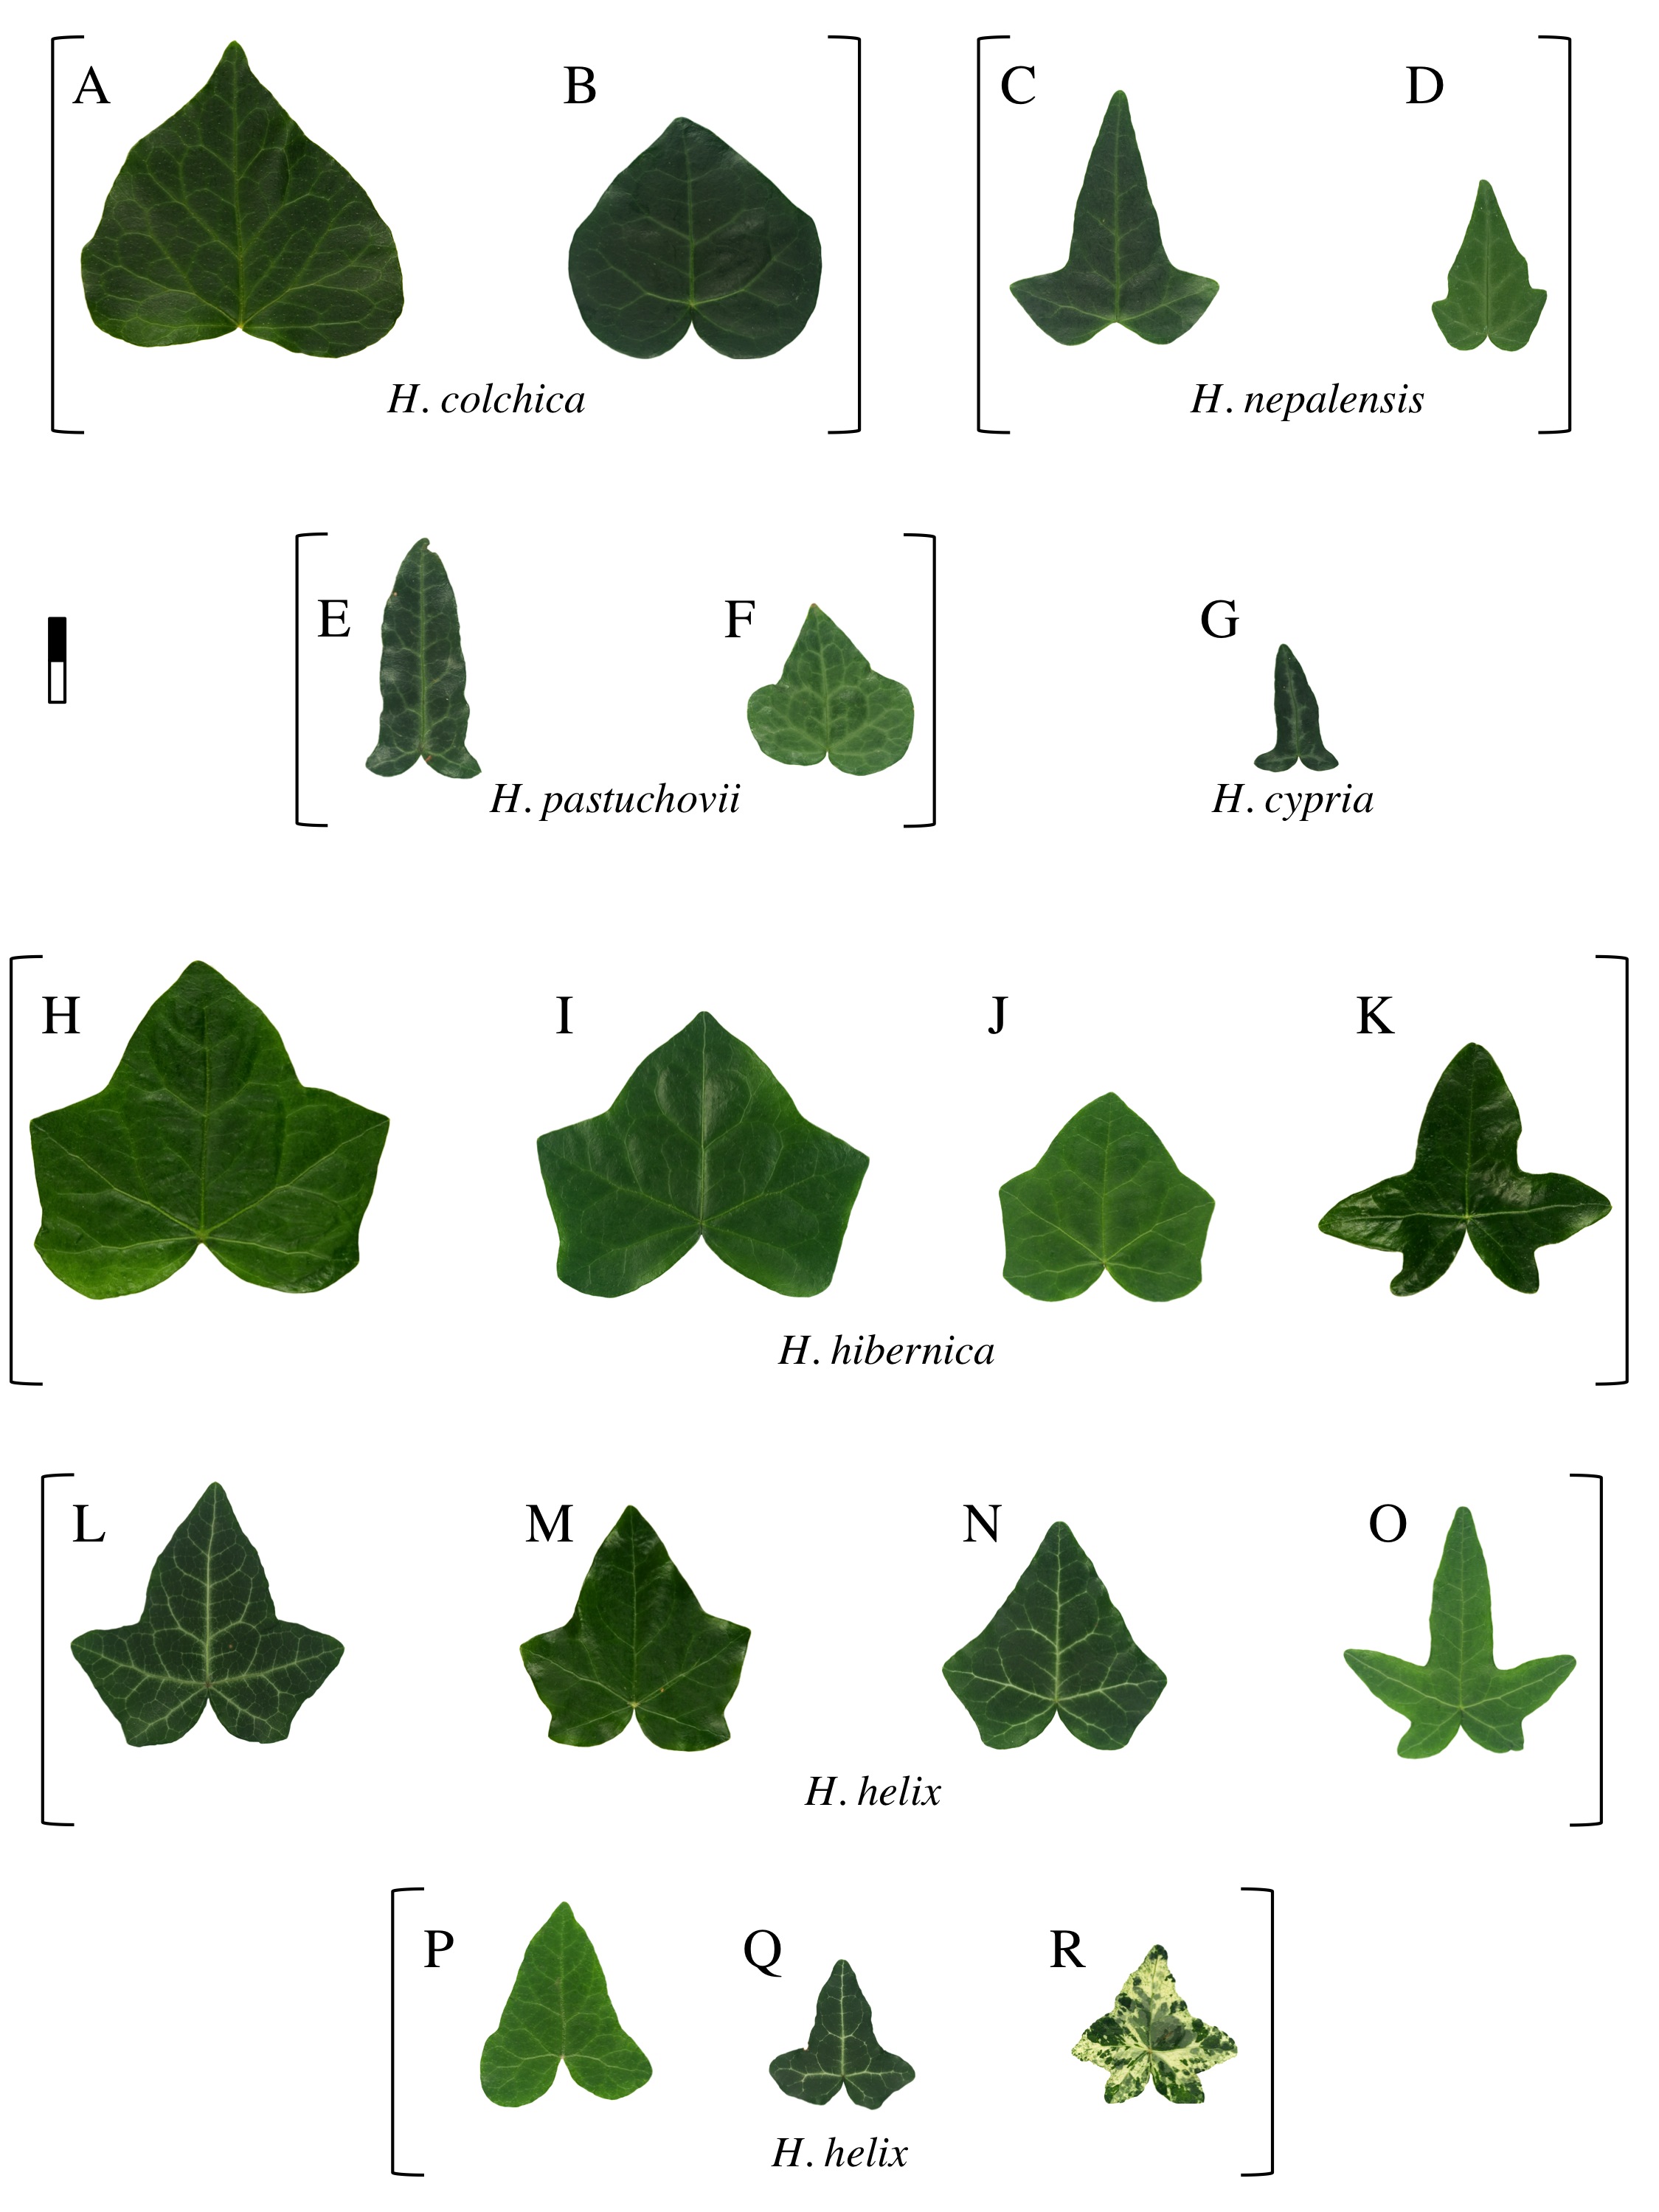 Ivy leaf morphology, plate 2